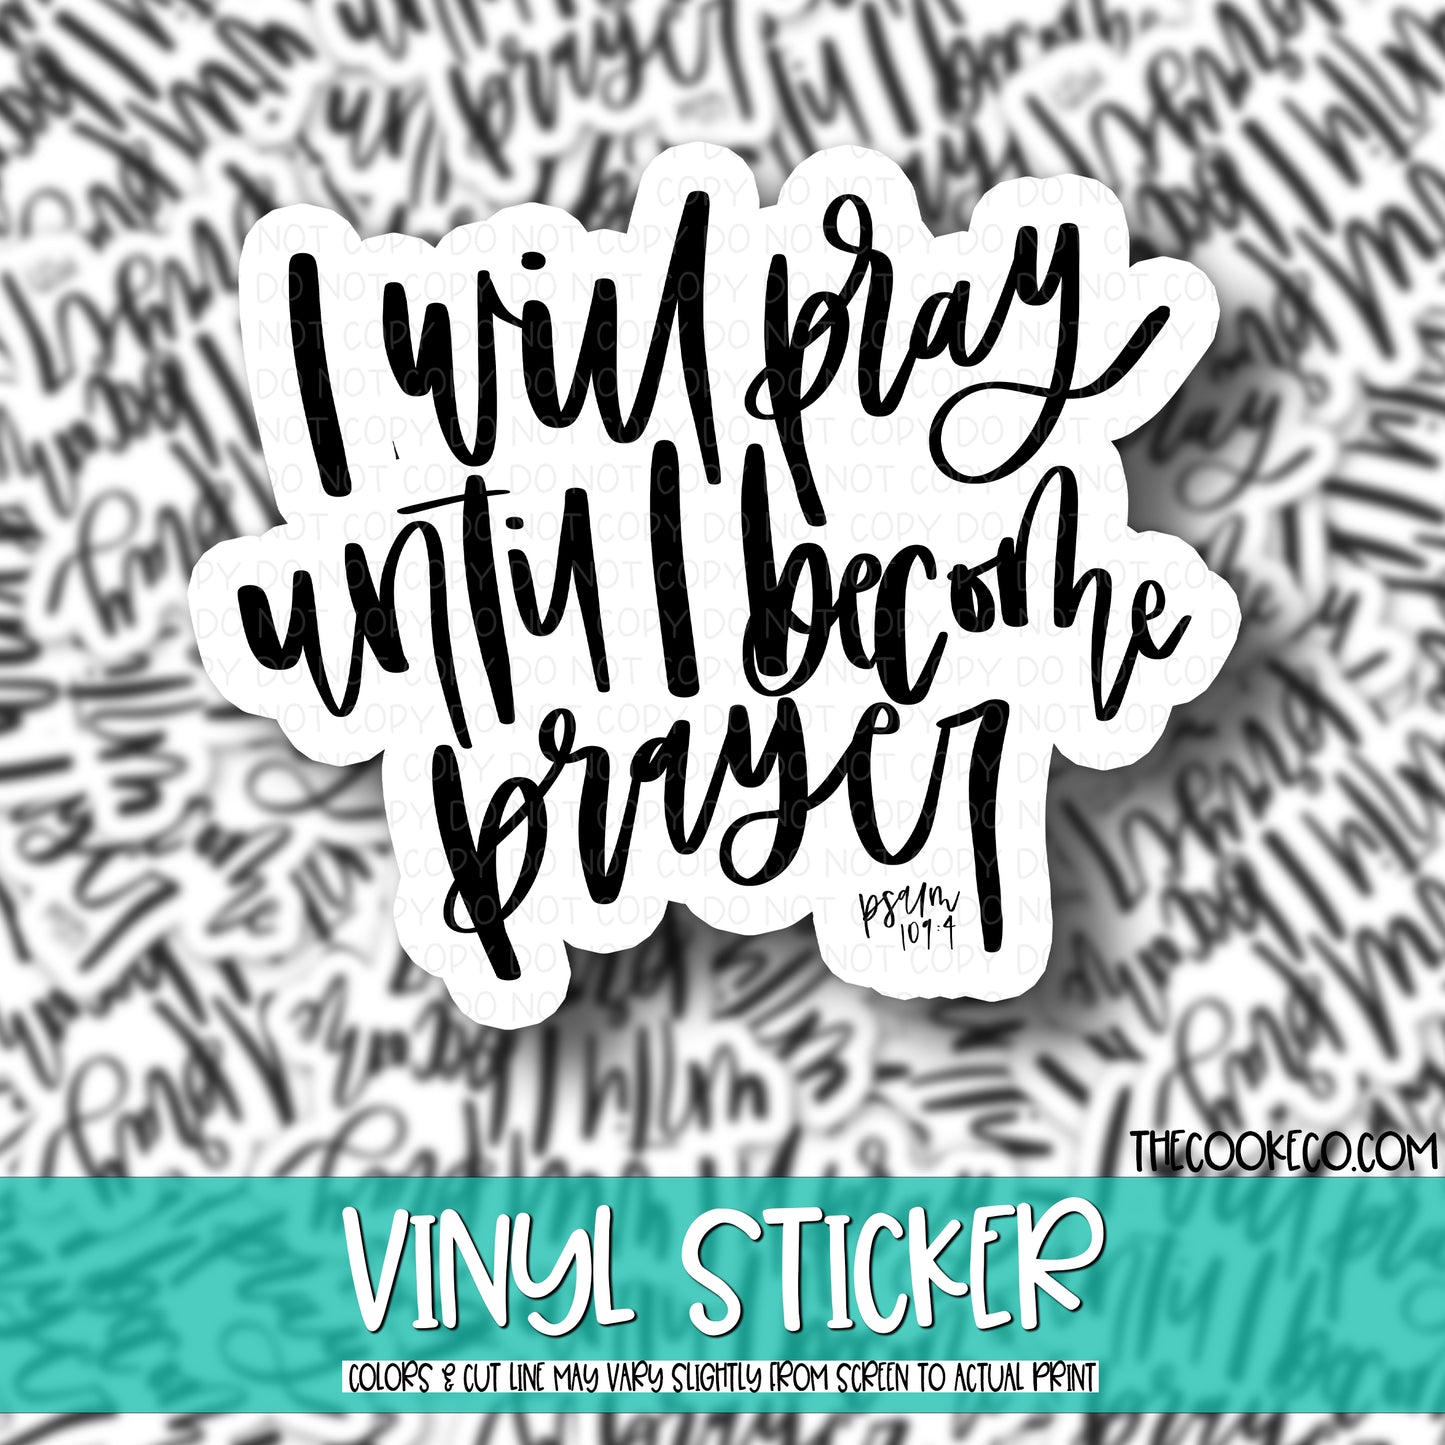 Vinyl Sticker | #V0516 - I WILL PRAY UNTIL I BECOME PRAYER